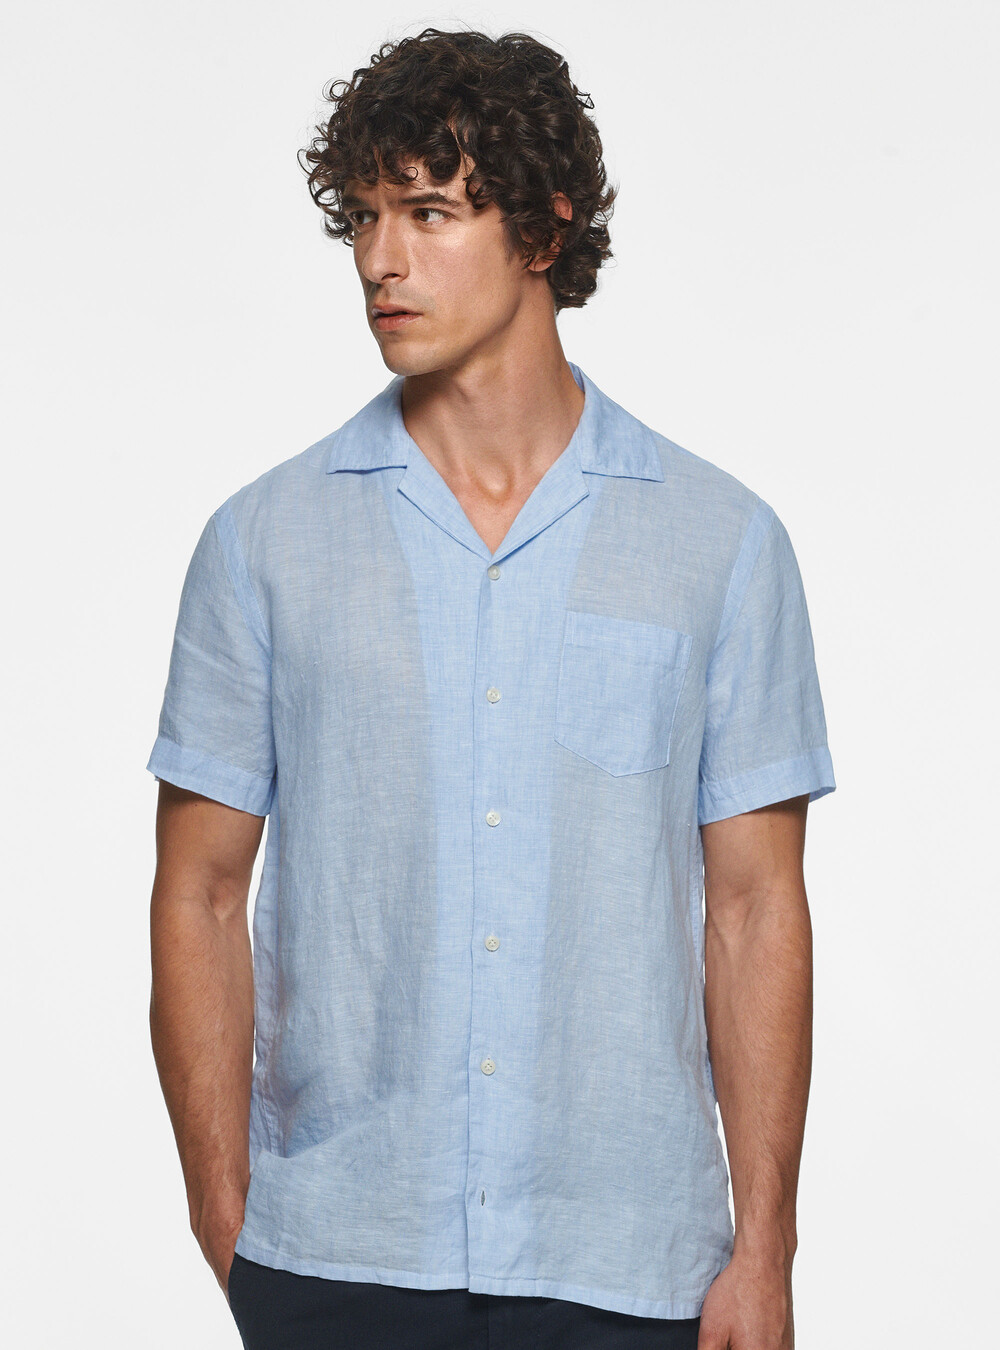 Pure linen comfort shirt | GutteridgeEU | catalog-gutteridge-storefront ...